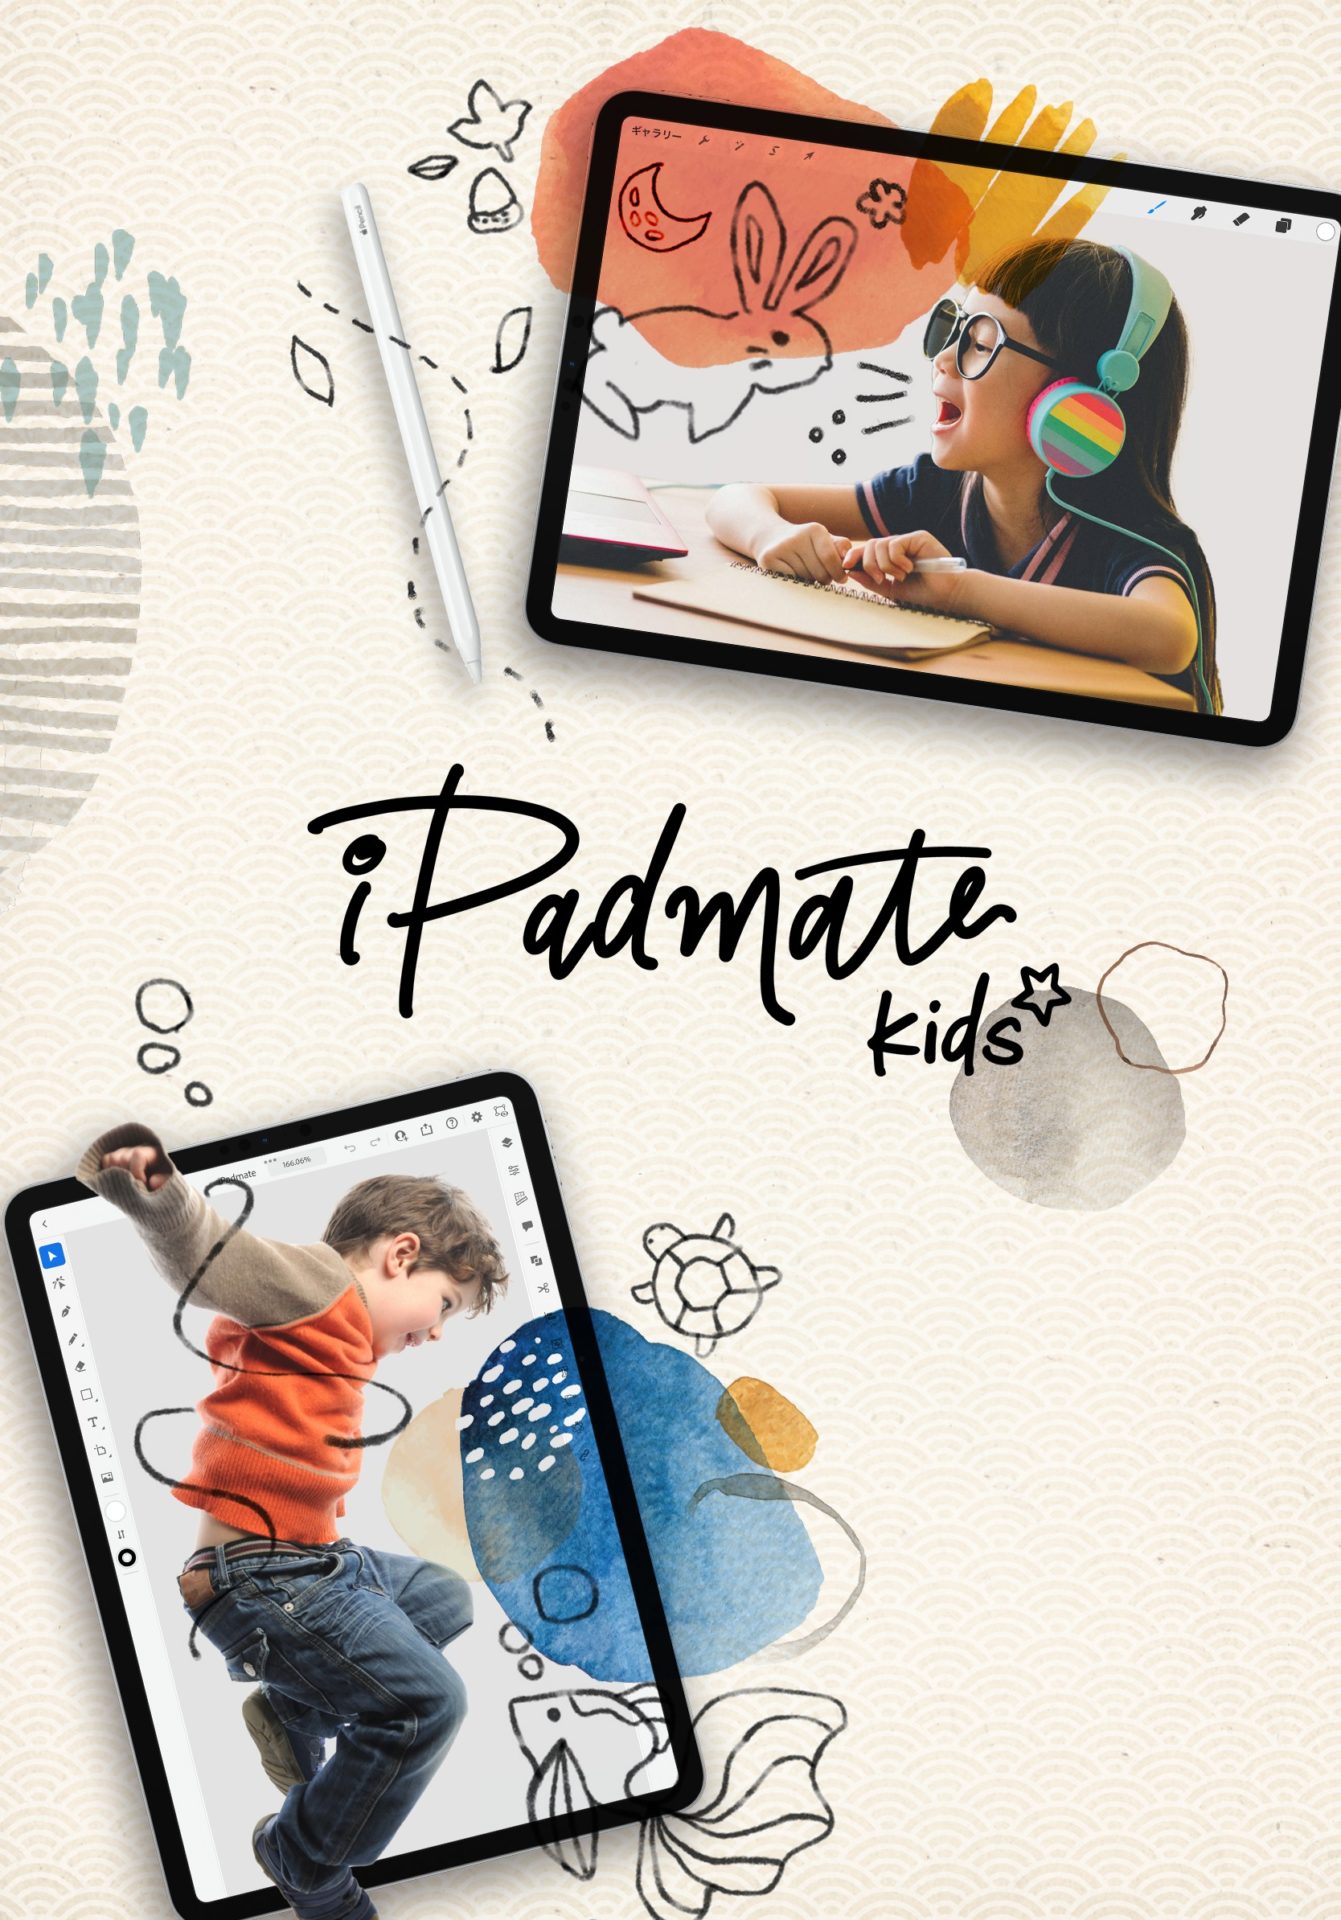 小学生向けiPadクリエイティブスクール「iPadmate kids」開校のサムネイル画像